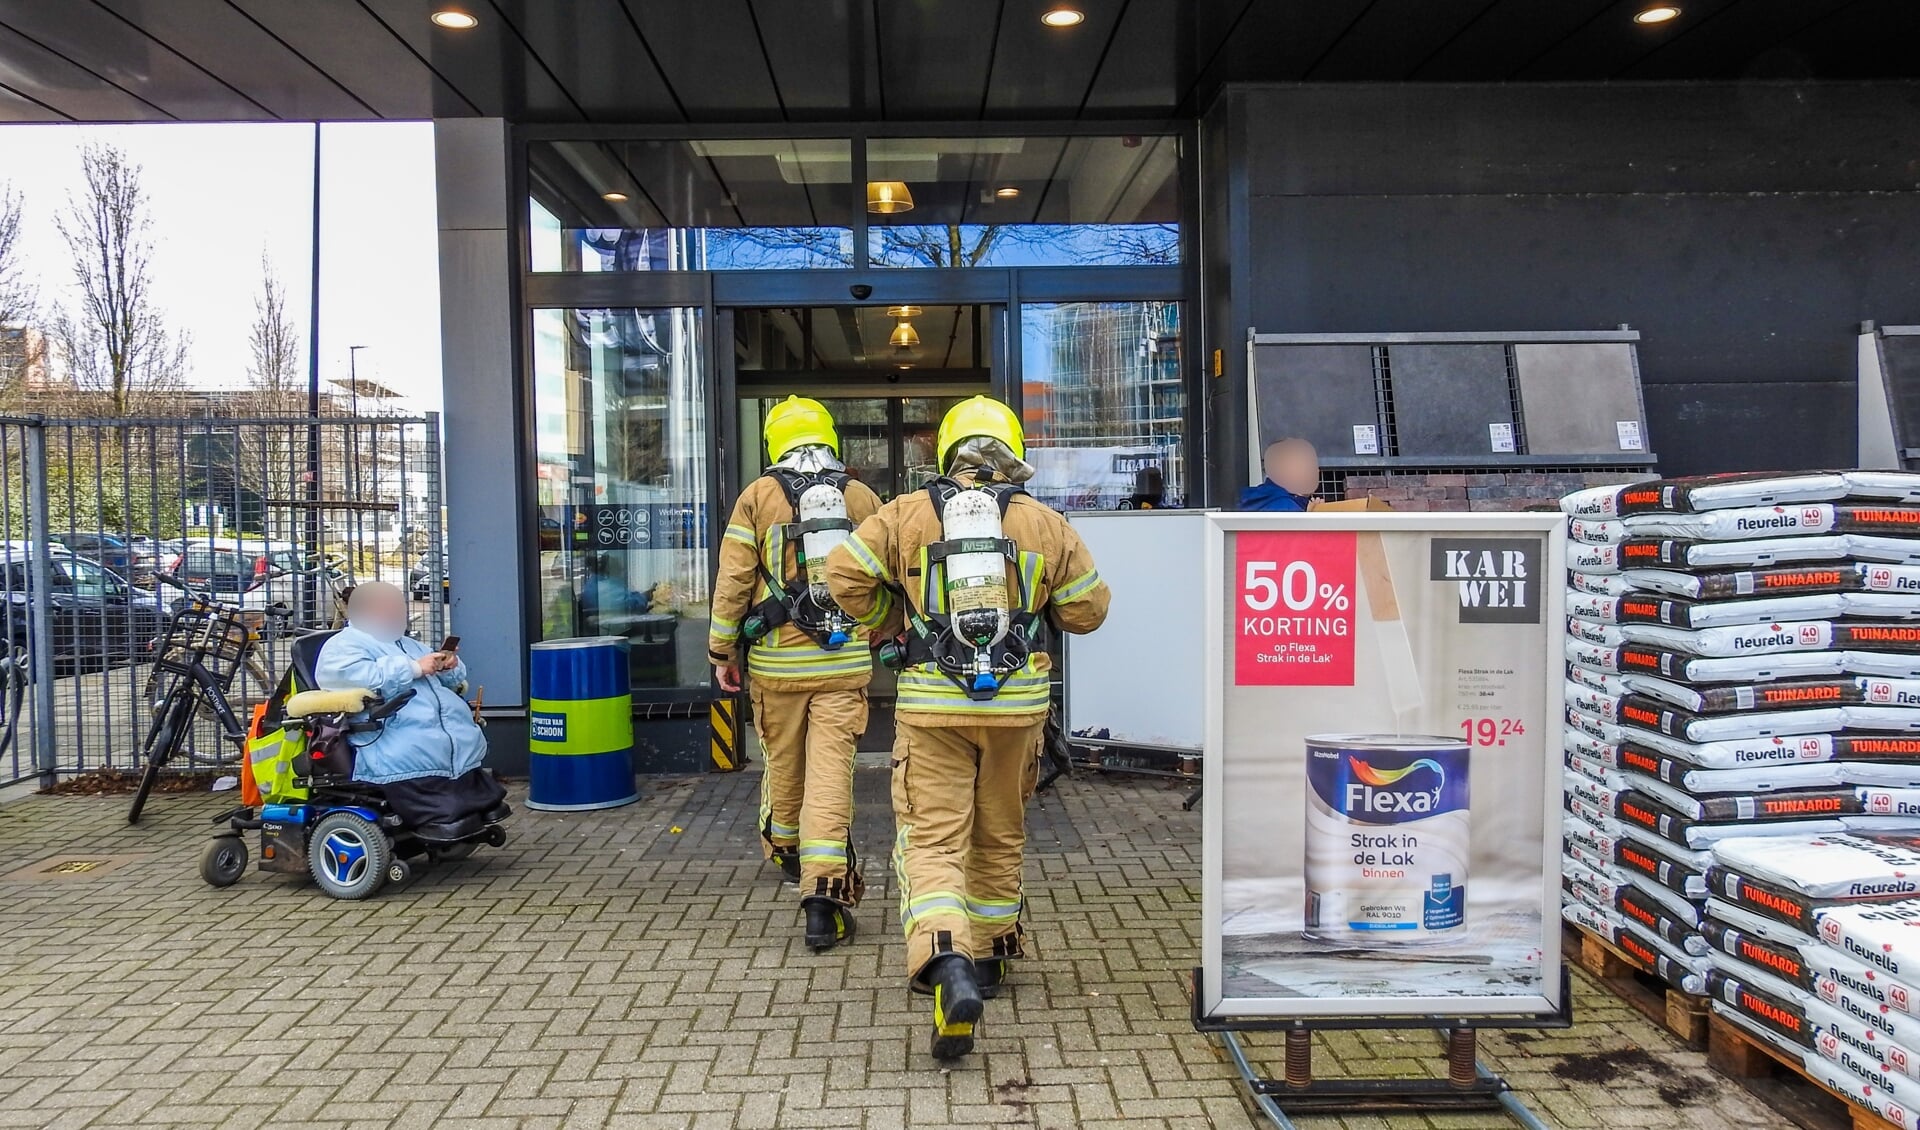 Bouwmarkt Karwei in Maassluis ontruimd nadat medewerkers kampen met hoofdpijnklachten